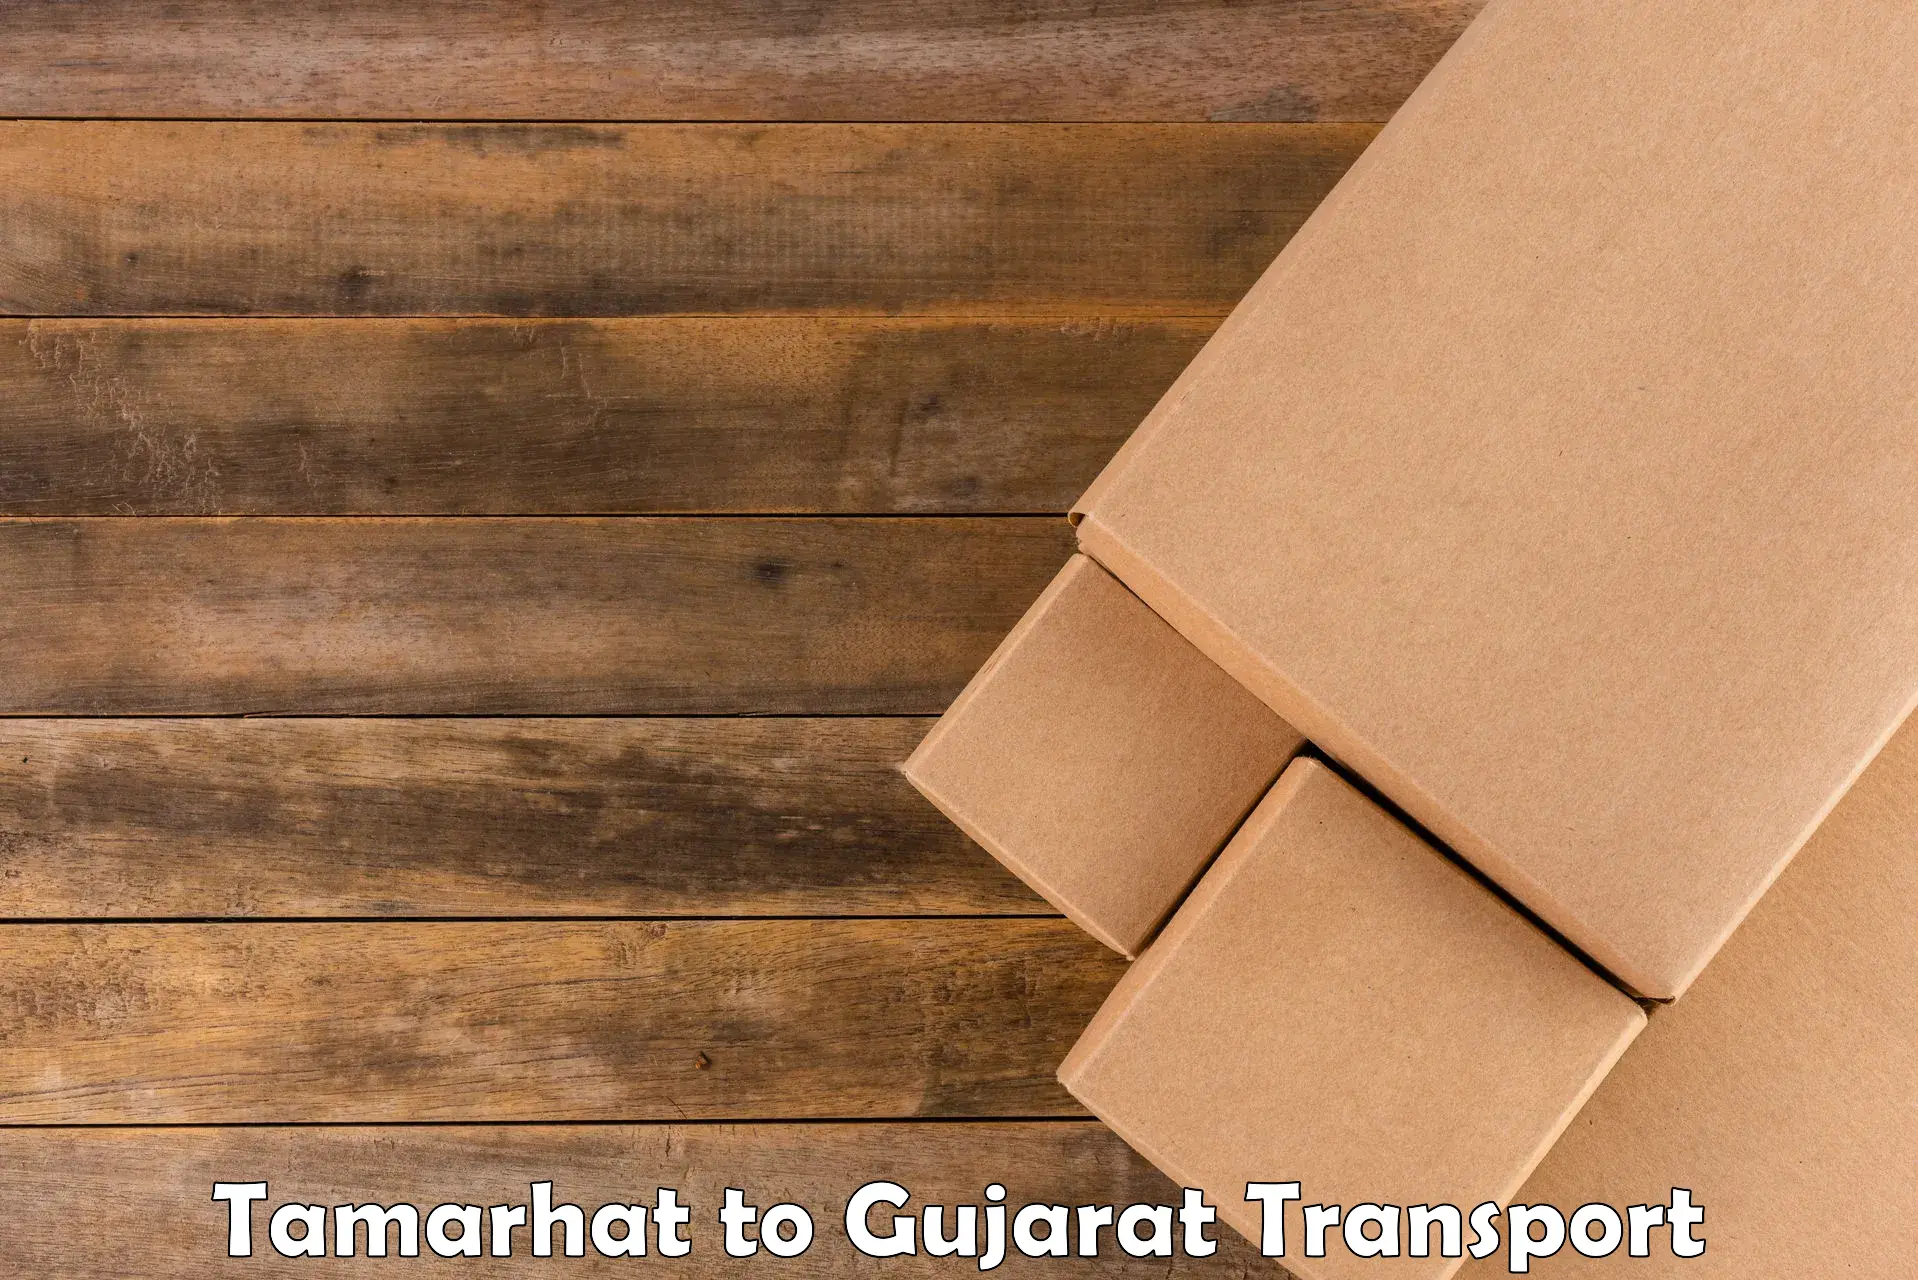 Cargo train transport services Tamarhat to Kalol Gujarat